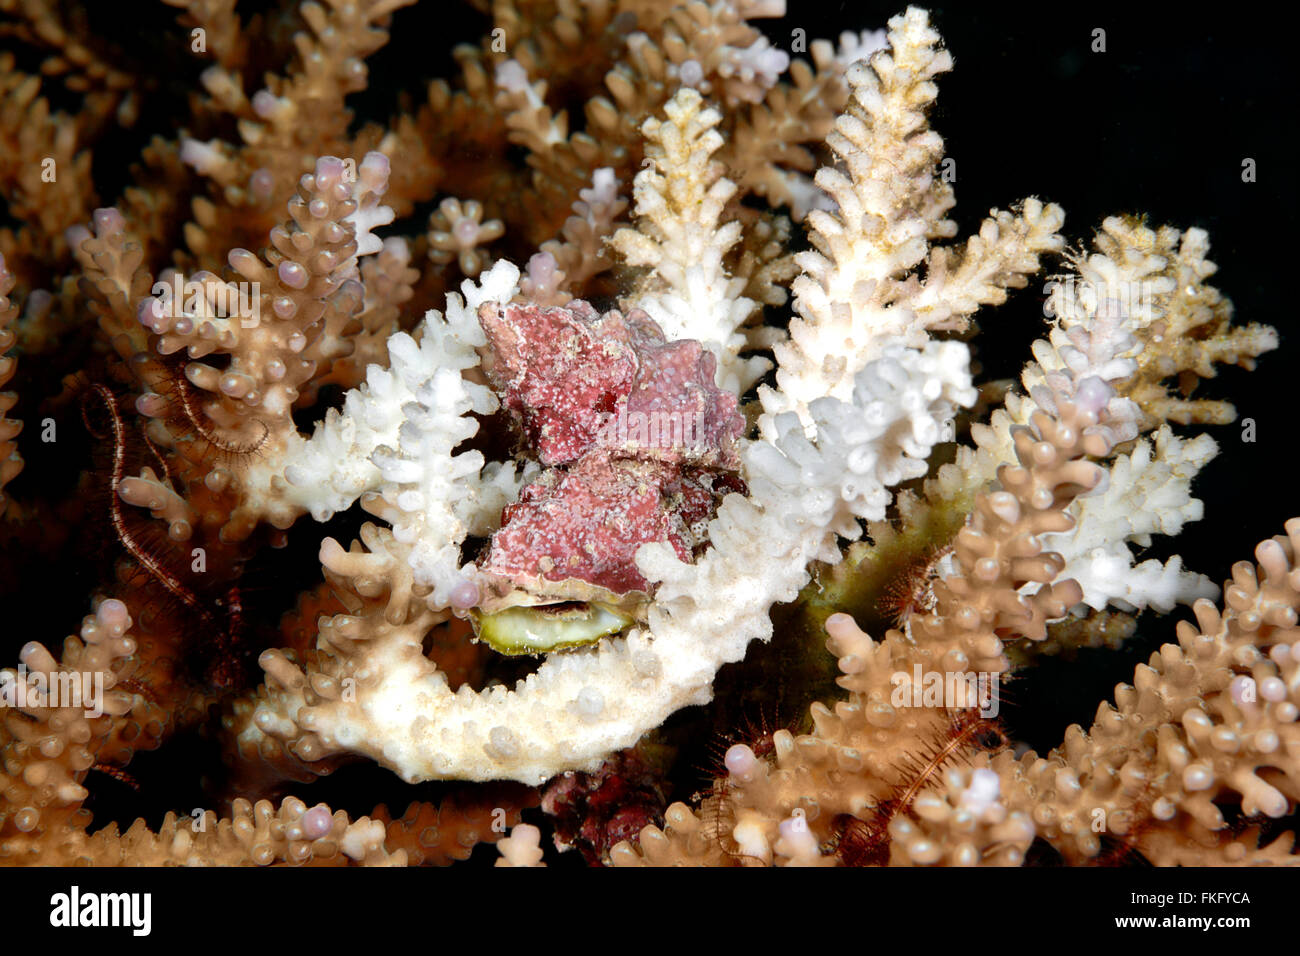 Drupe, Drupella rugueux rugosa. Ces réservoirs sont des corallivores qui paissent dans les tissus des coraux vivants. Banque D'Images